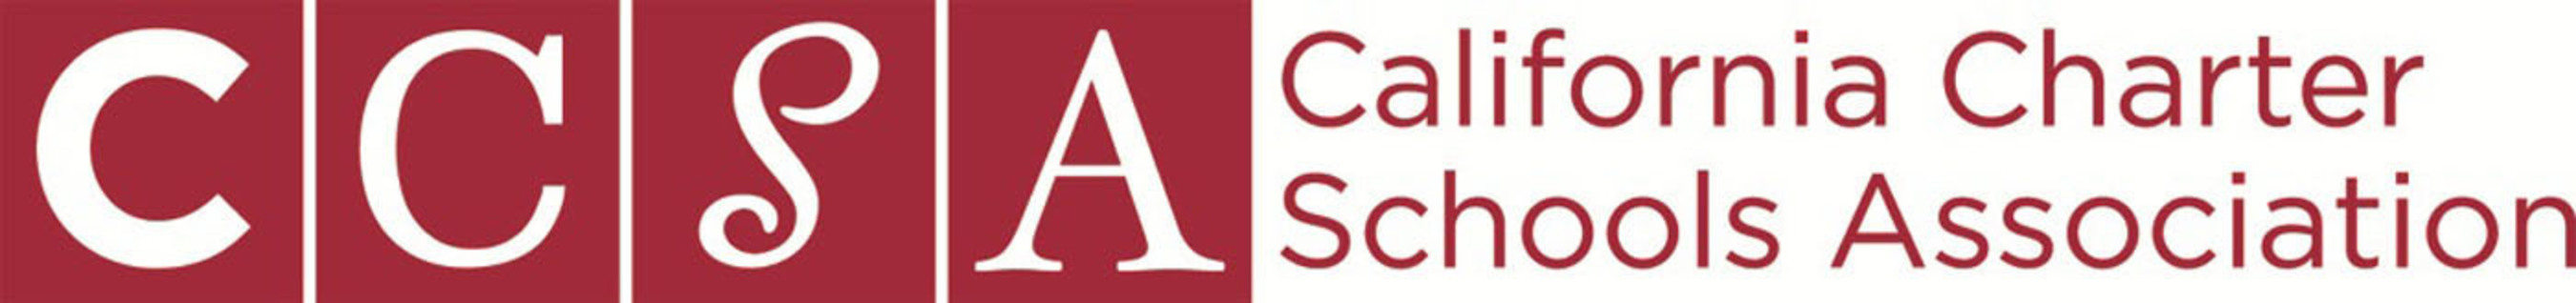 CCSA logo.